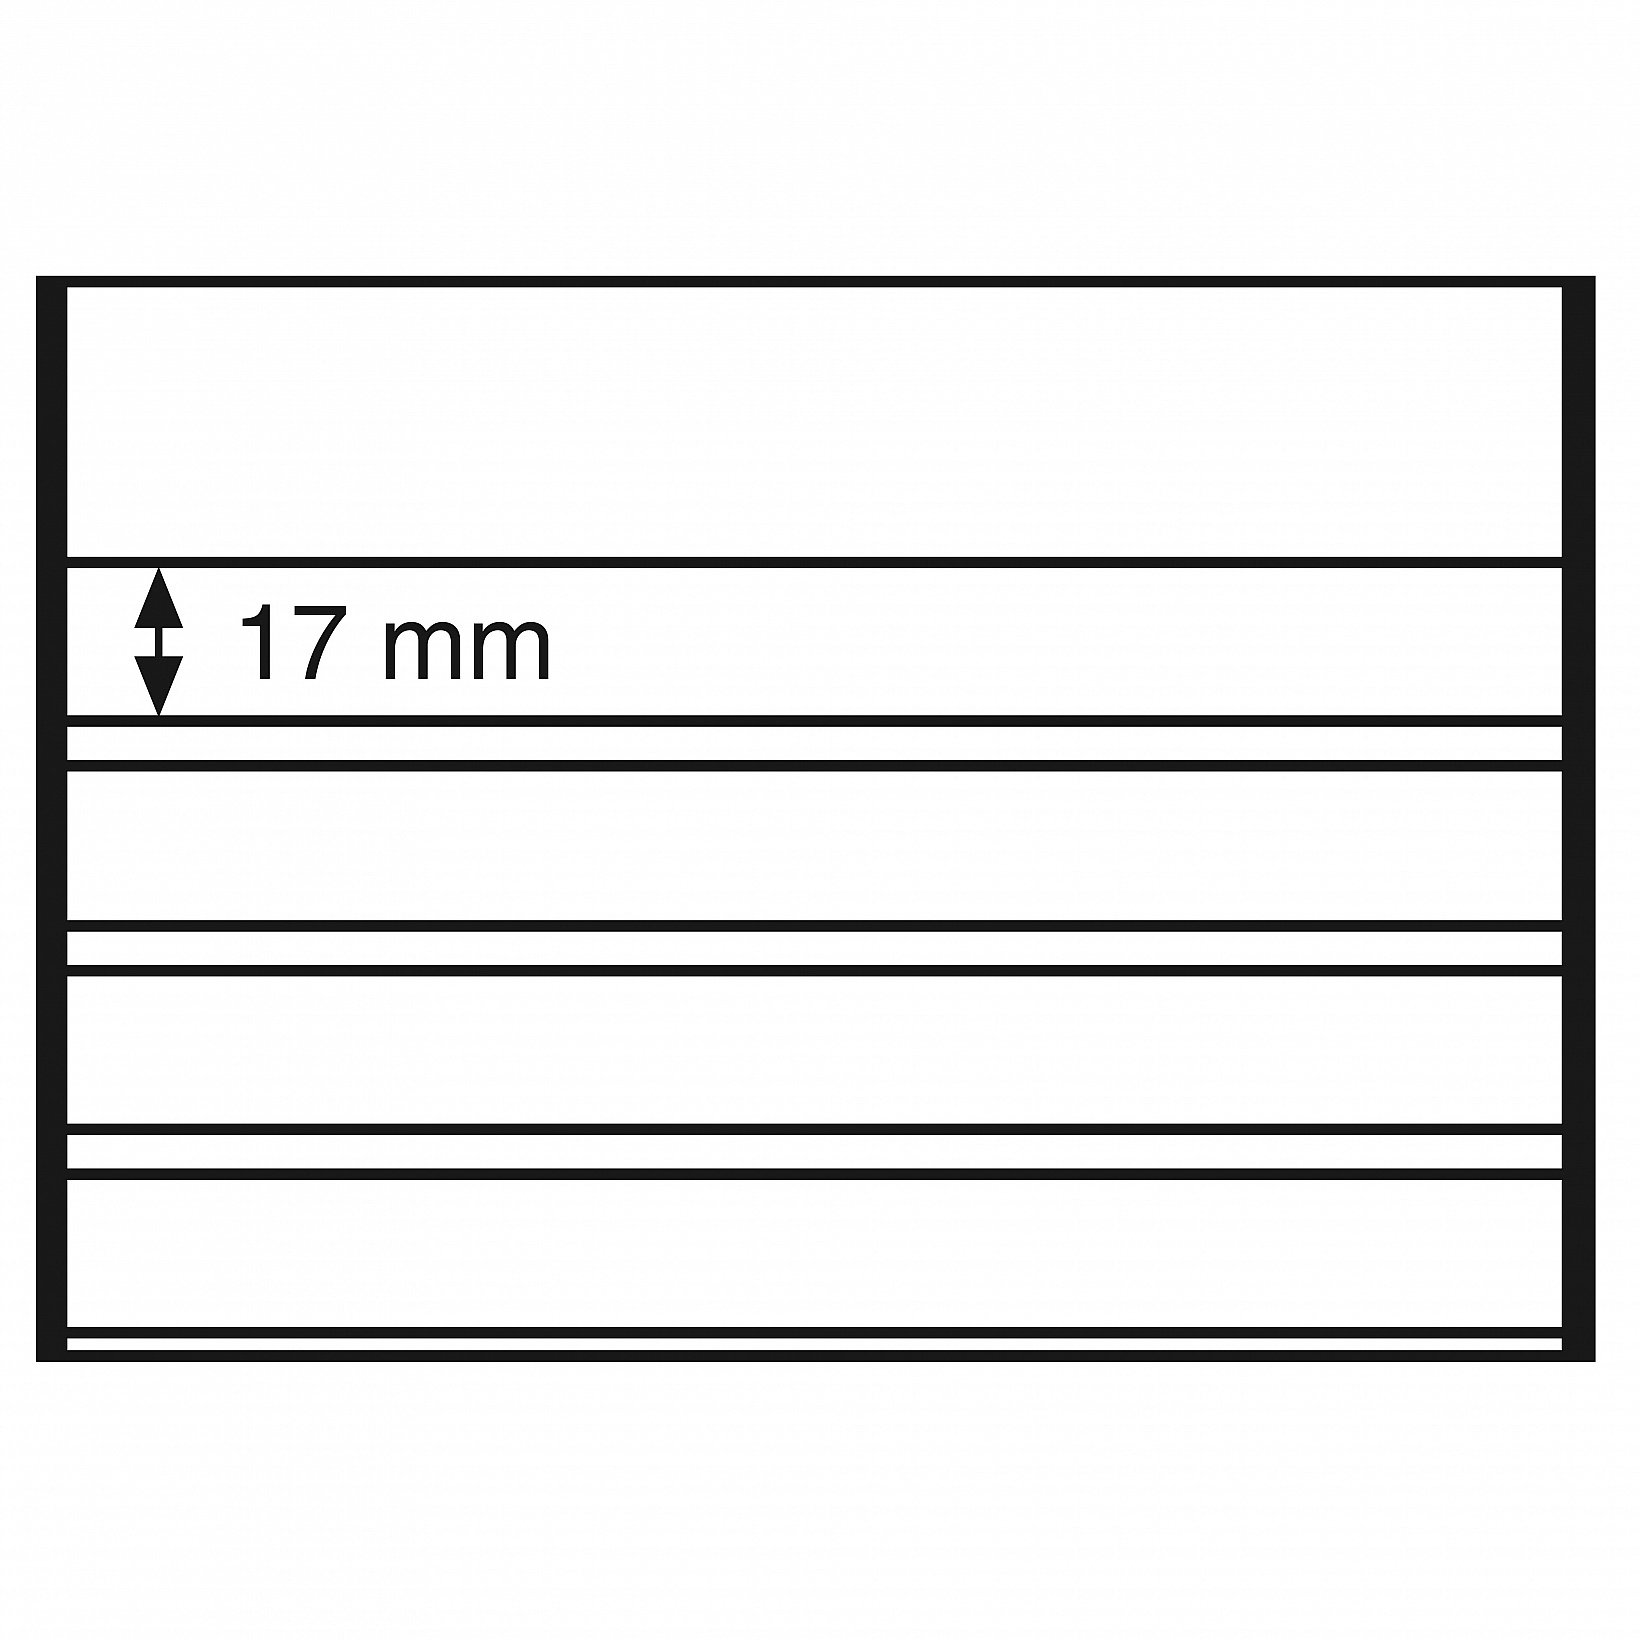 Štandartné PVC karty, 158x113 mm, 4 číre pásy s krycím listom, čierne, 100ks/bal (EKC6D/4SPVC)